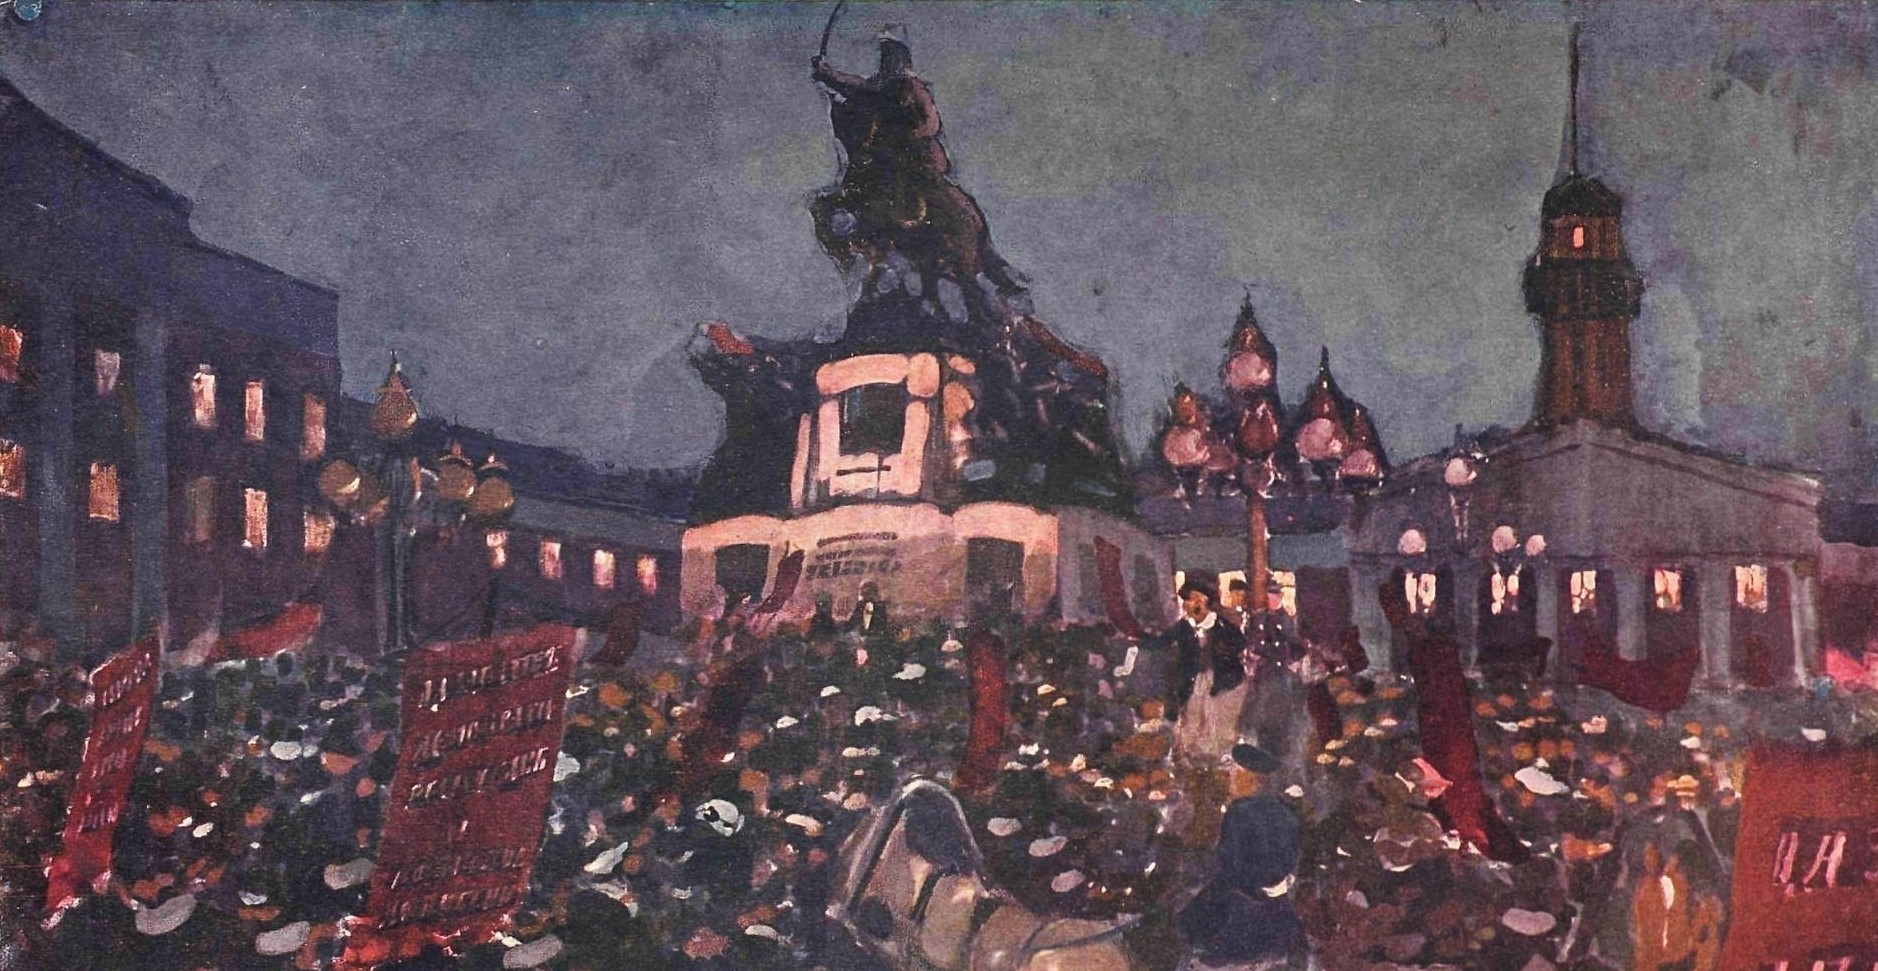 Skobelev Plads er opkaldt efter General Mikhail Skobelev, som blev hædret for sin indsats under den russisk-tyrkiske krig. Rytterstatuen på maleriet afbilleder ham. Statuen blev revet ned i 1918, da man besluttede sig for at fjerne zarstyrets monumenter i kølvandet på revolutionen. Skobelev Pladsen under februar revolutionen af maleren Aleksandr Gerasimov (1917).